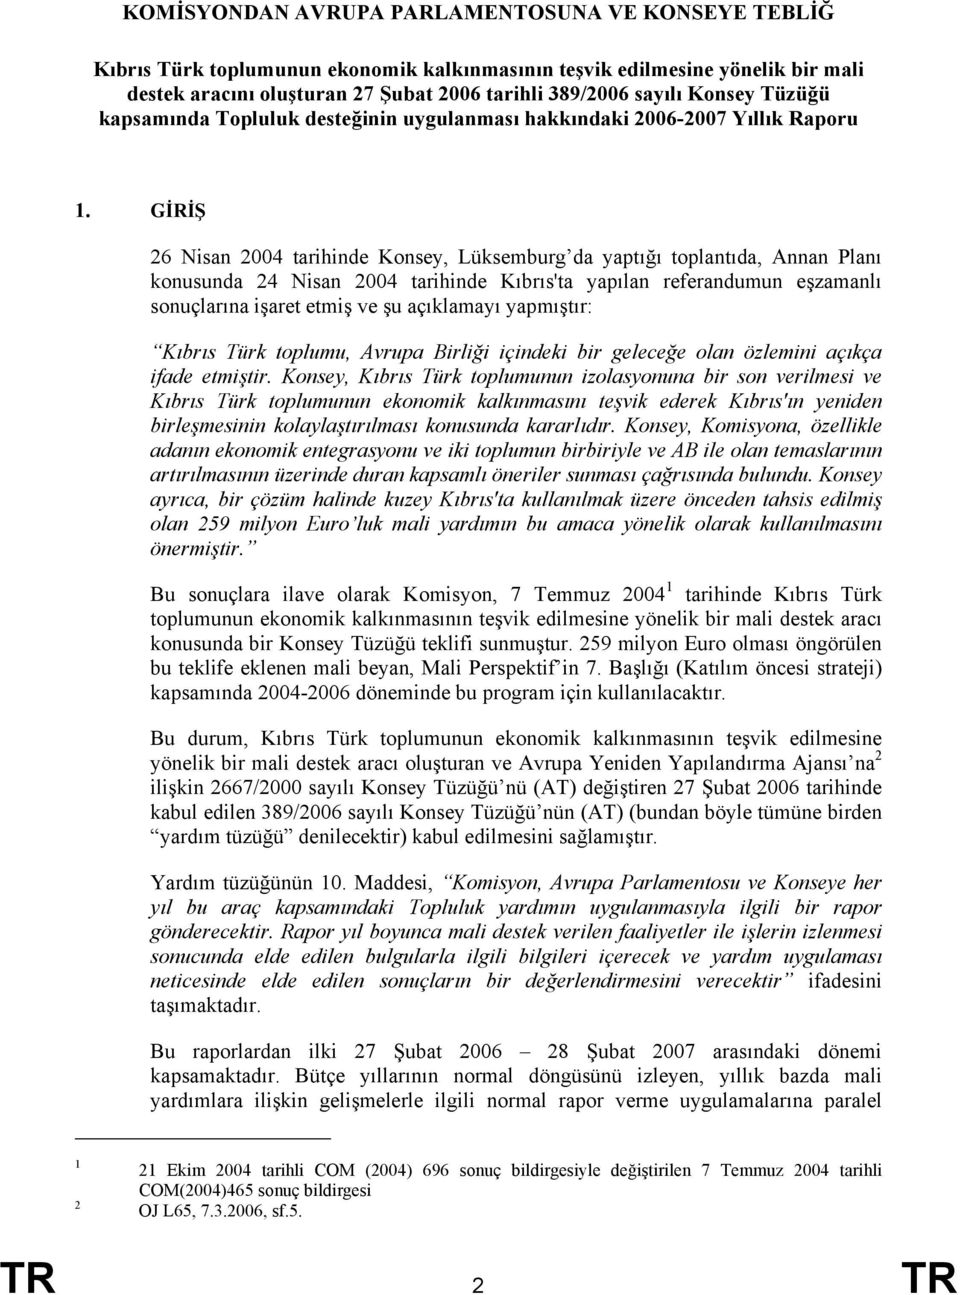 GİRİŞ 26 Nisan 2004 tarihinde Konsey, Lüksemburg da yaptığı toplantıda, Annan Planı konusunda 24 Nisan 2004 tarihinde Kıbrıs'ta yapılan referandumun eşzamanlı sonuçlarına işaret etmiş ve şu